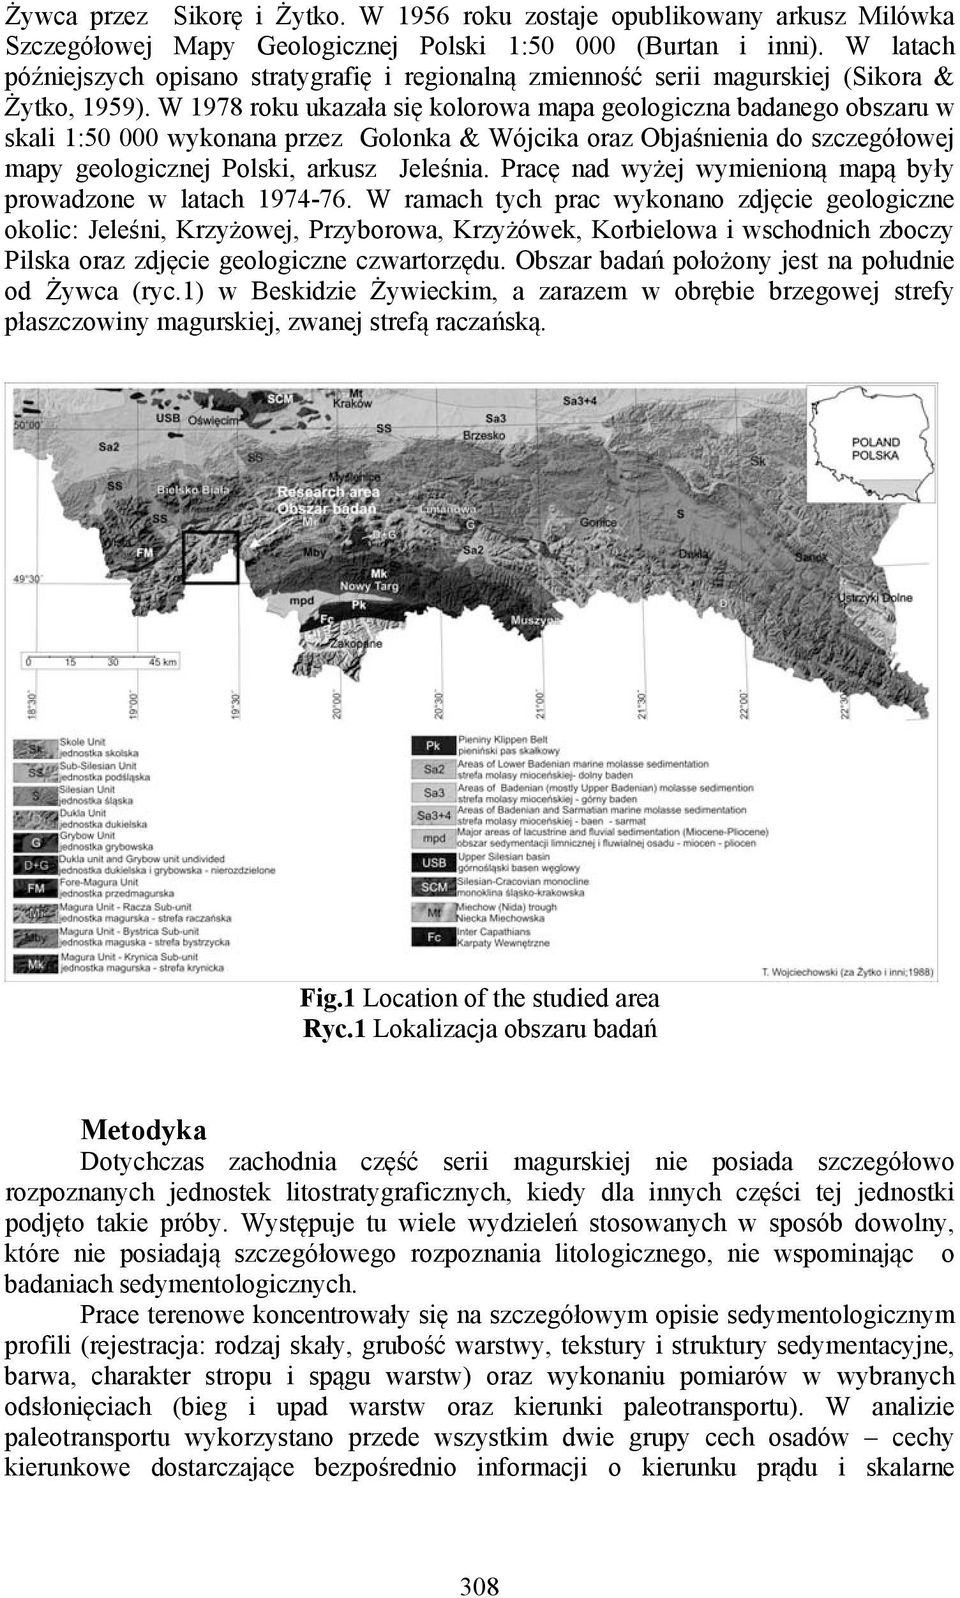 W 1978 roku ukazała się kolorowa mapa geologiczna badanego obszaru w skali 1:50 000 wykonana przez Golonka & Wójcika oraz Objaśnienia do szczegółowej mapy geologicznej Polski, arkusz Jeleśnia.